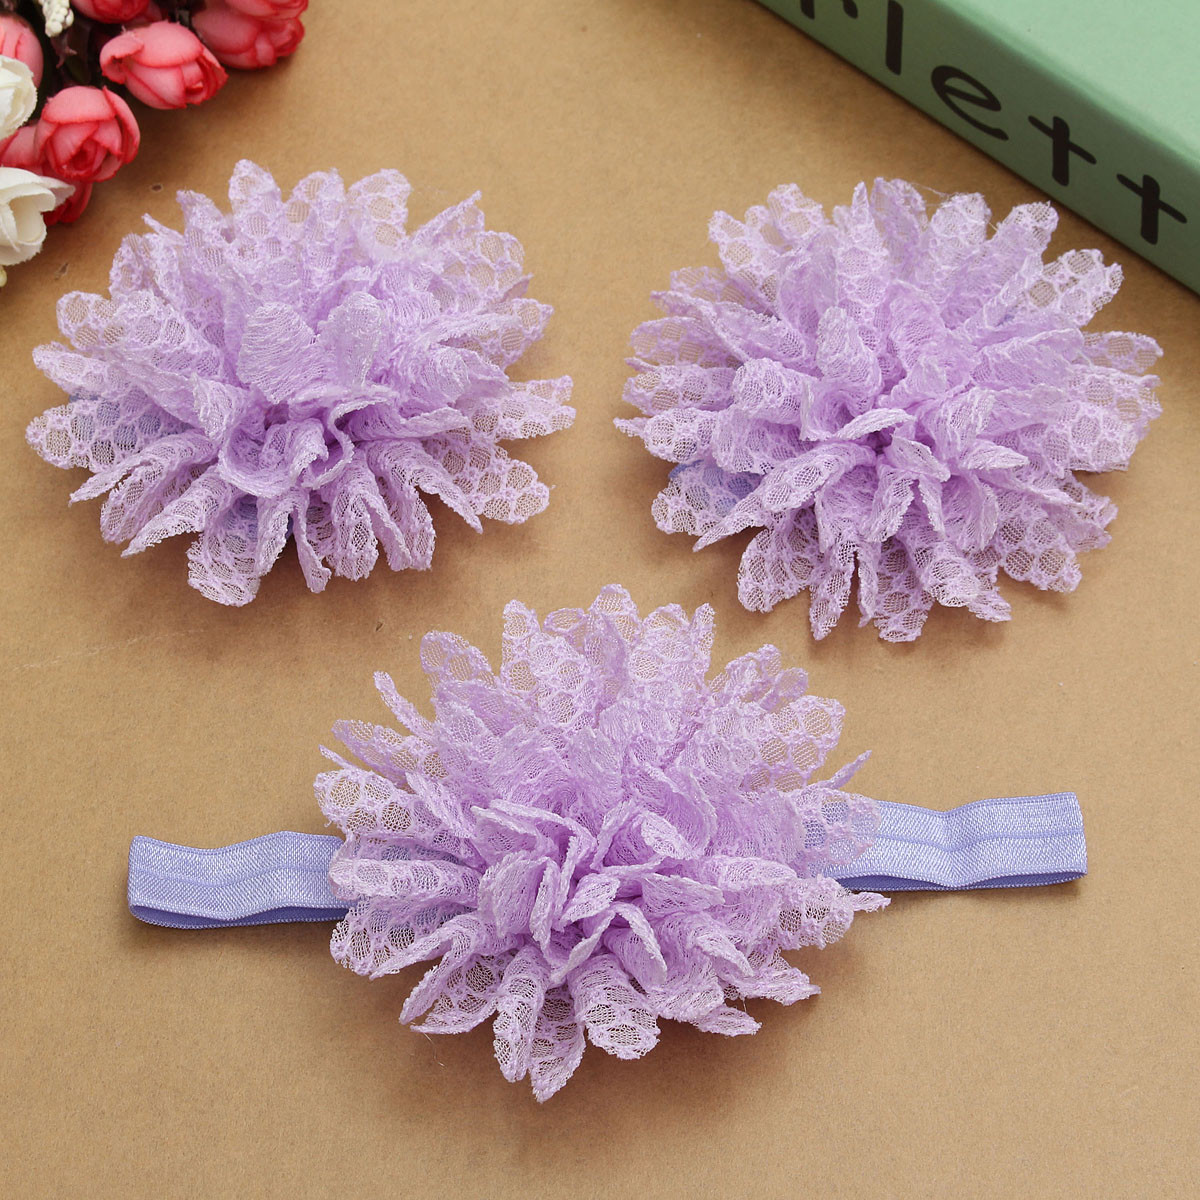 3pcs-a-Set-Lace-Flower-Hair-Band-Soft-Elastic-Wear-Accessories-Barefoot-Art-Feet-Baby-Girls-Headbran-1037367